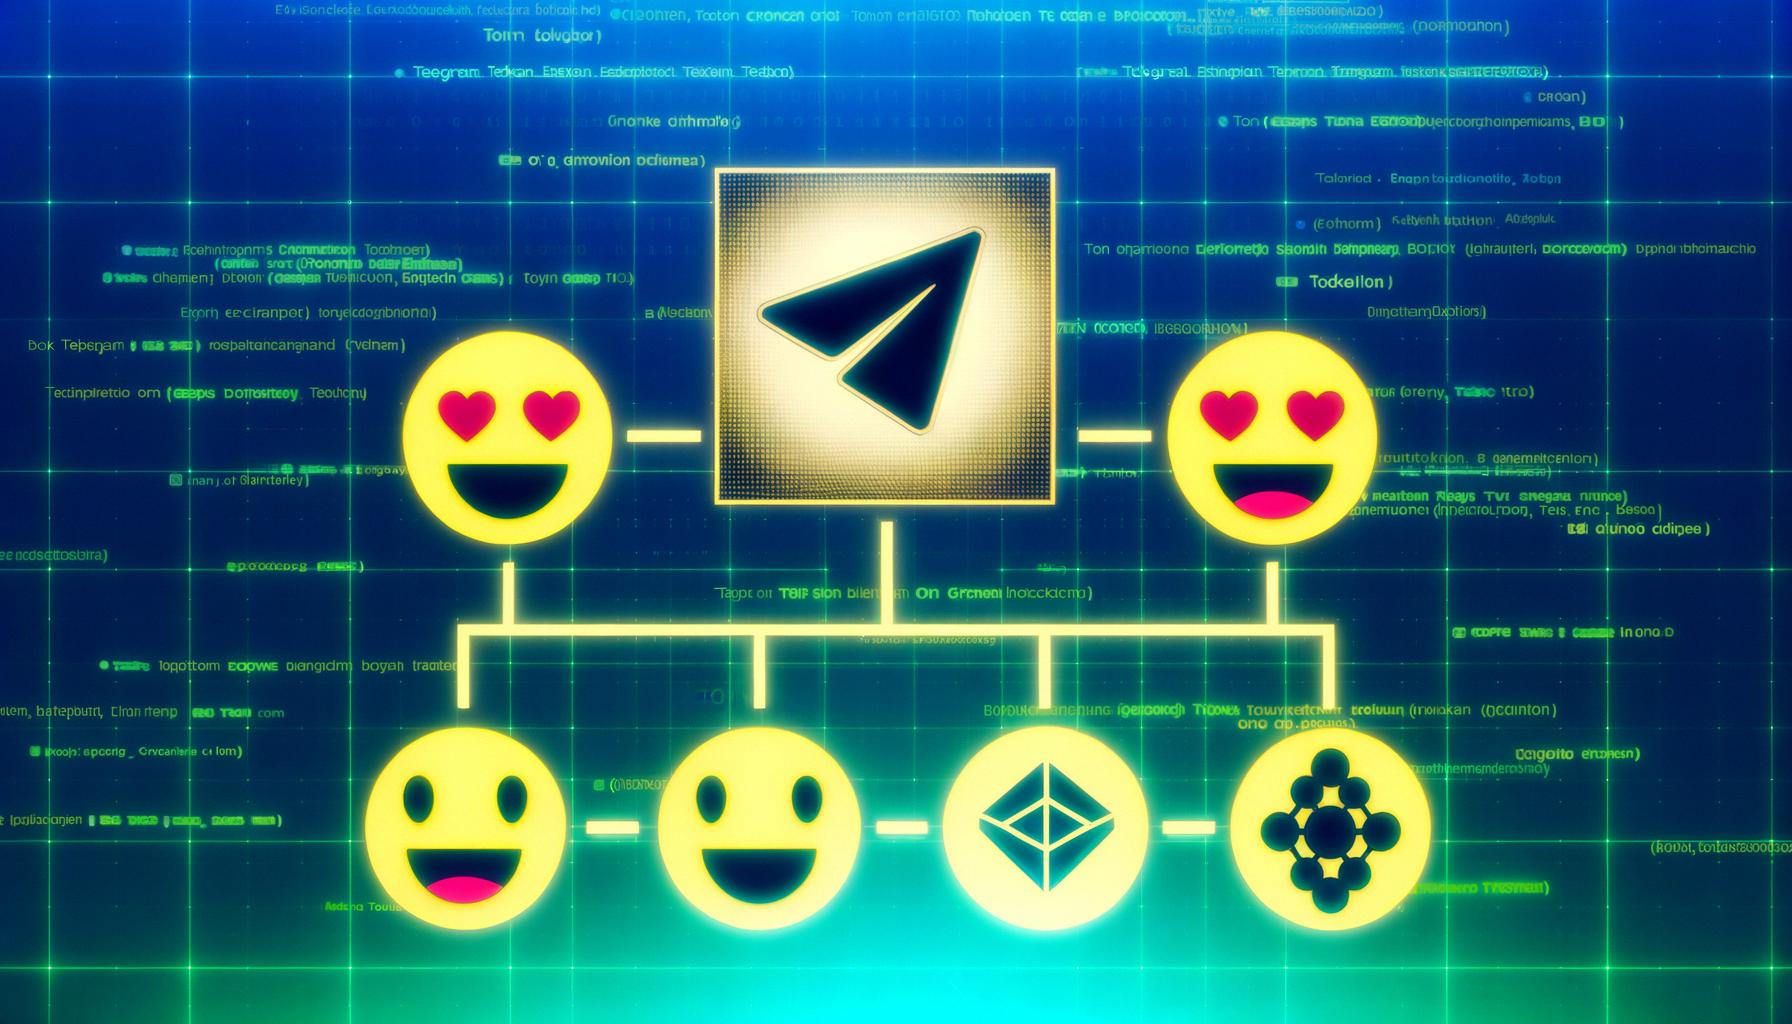 Telegram innovates with blockchain for digital asset user monetization.